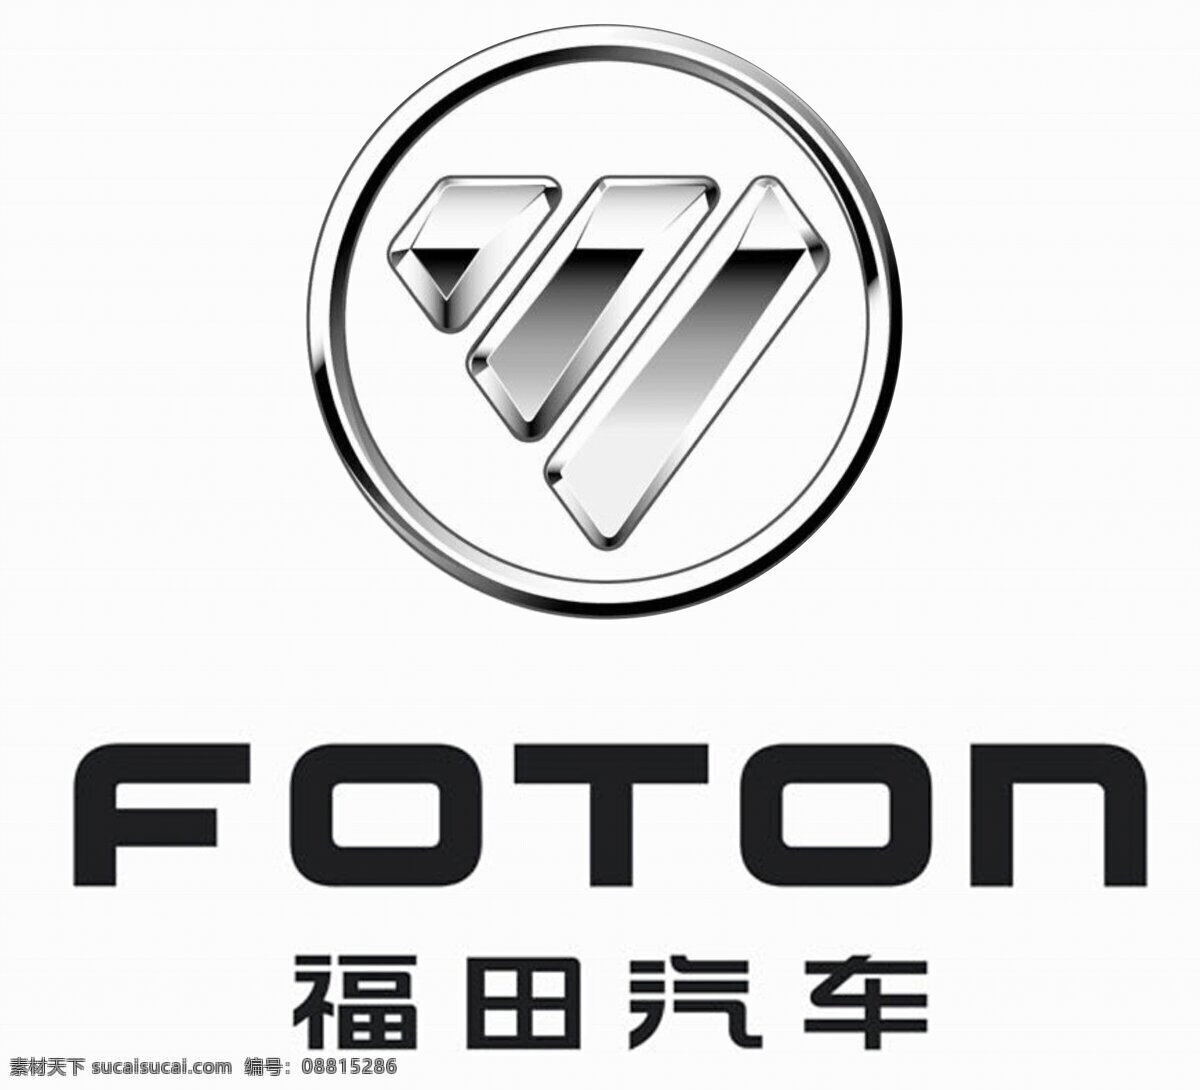 福田汽车 福田logo 福田标志 福田标识 福田 企业logo 标志图标 企业 logo 标志